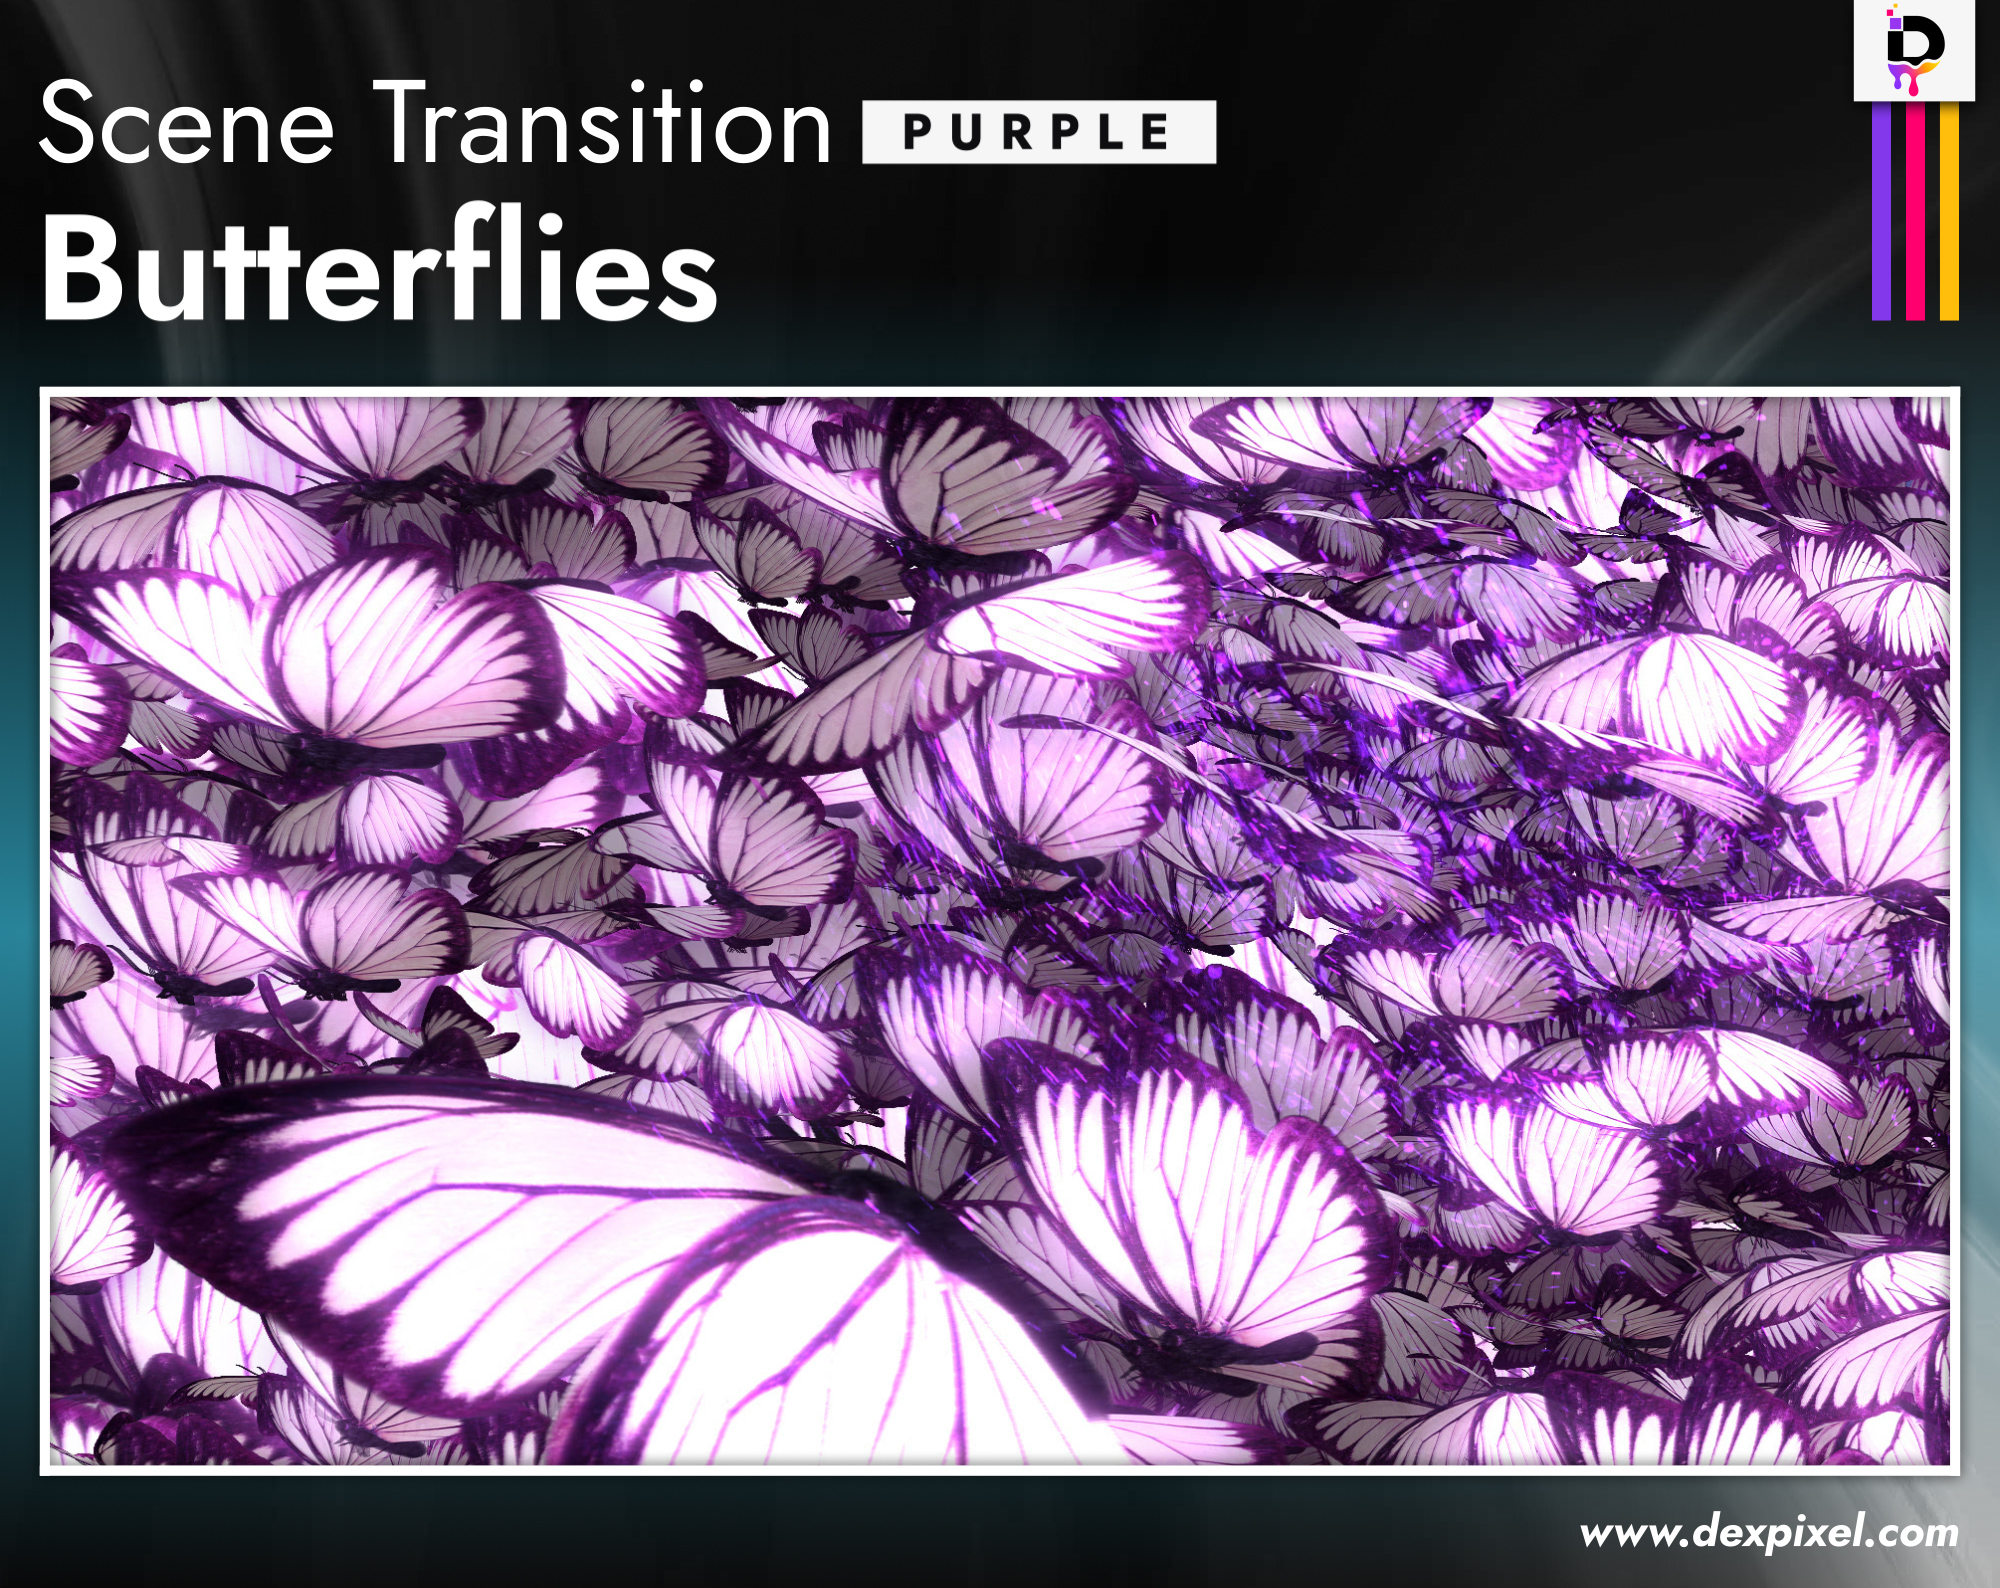 Scene Transition Dexpixel Butterflies Purple